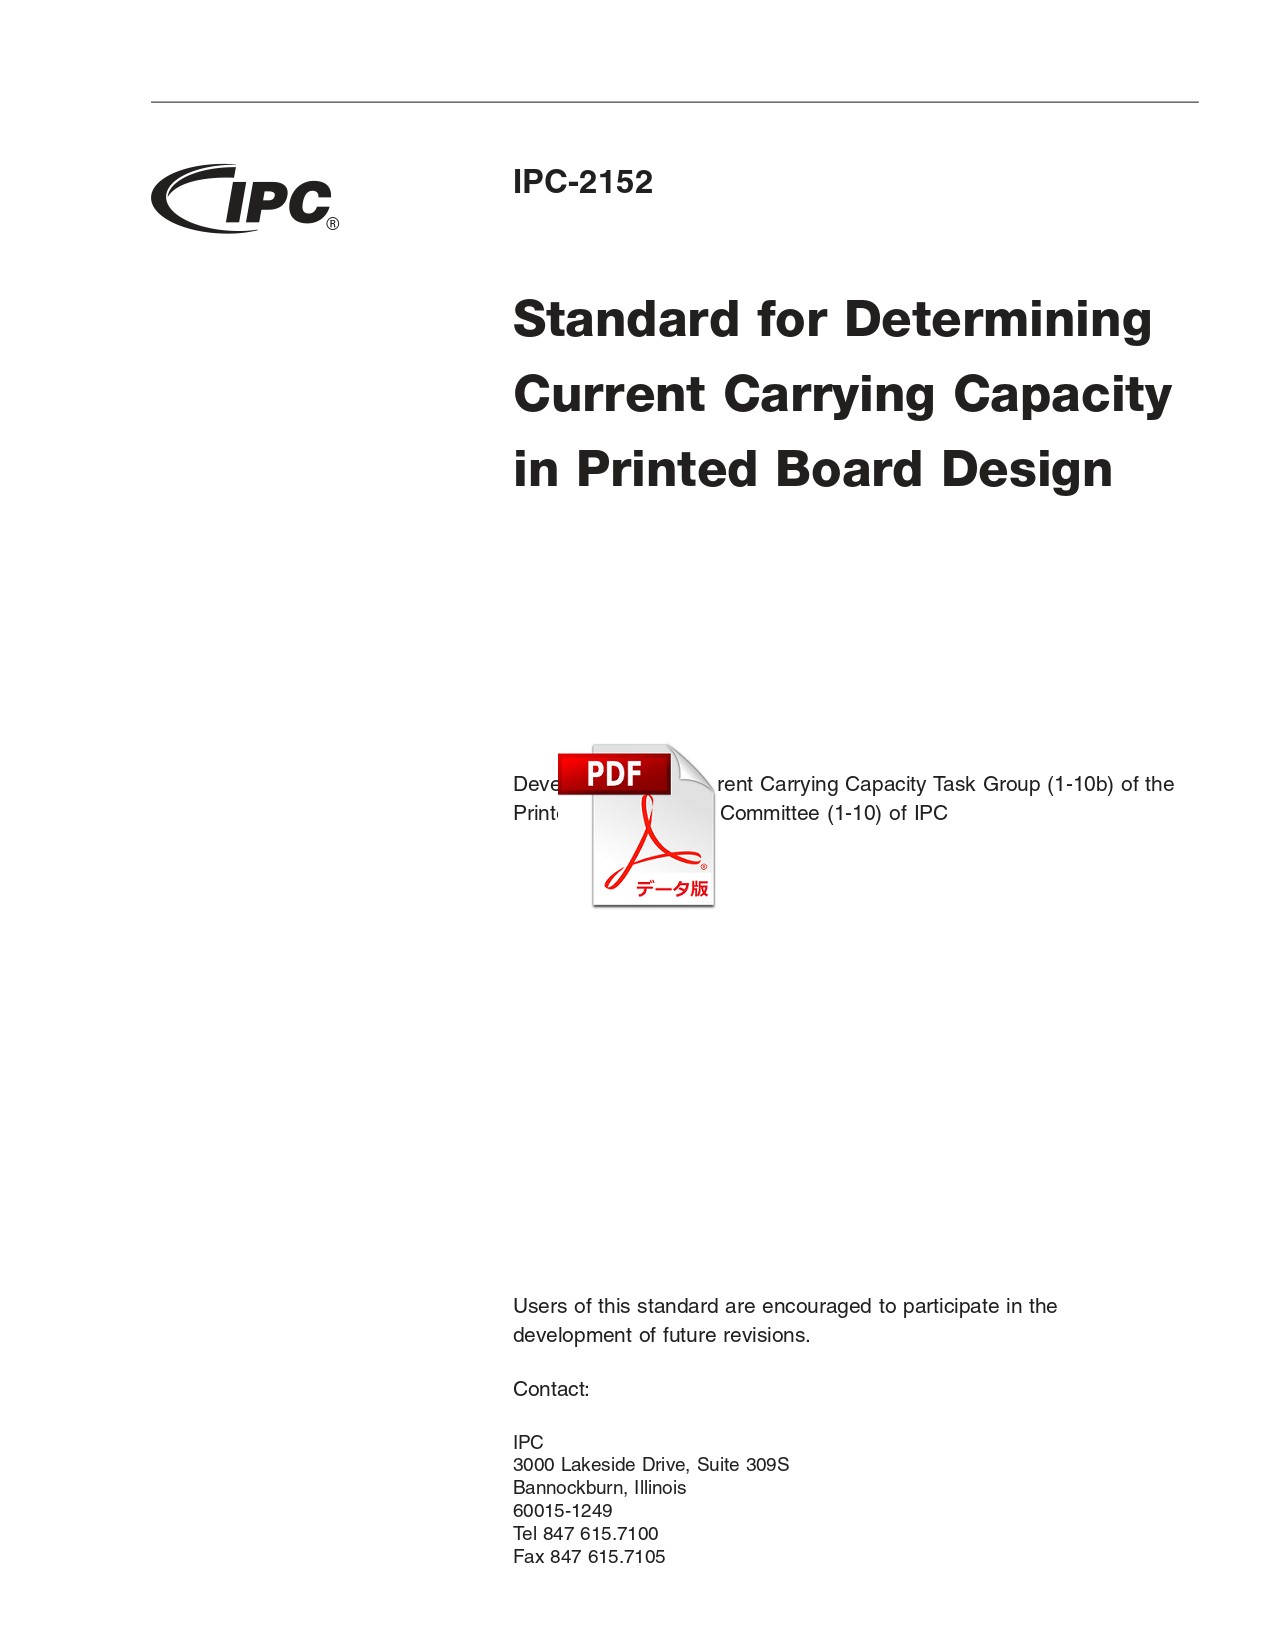 【英語版】IPC-2152: Standard for Determining Current Carrying Capacity in Printed Board Design